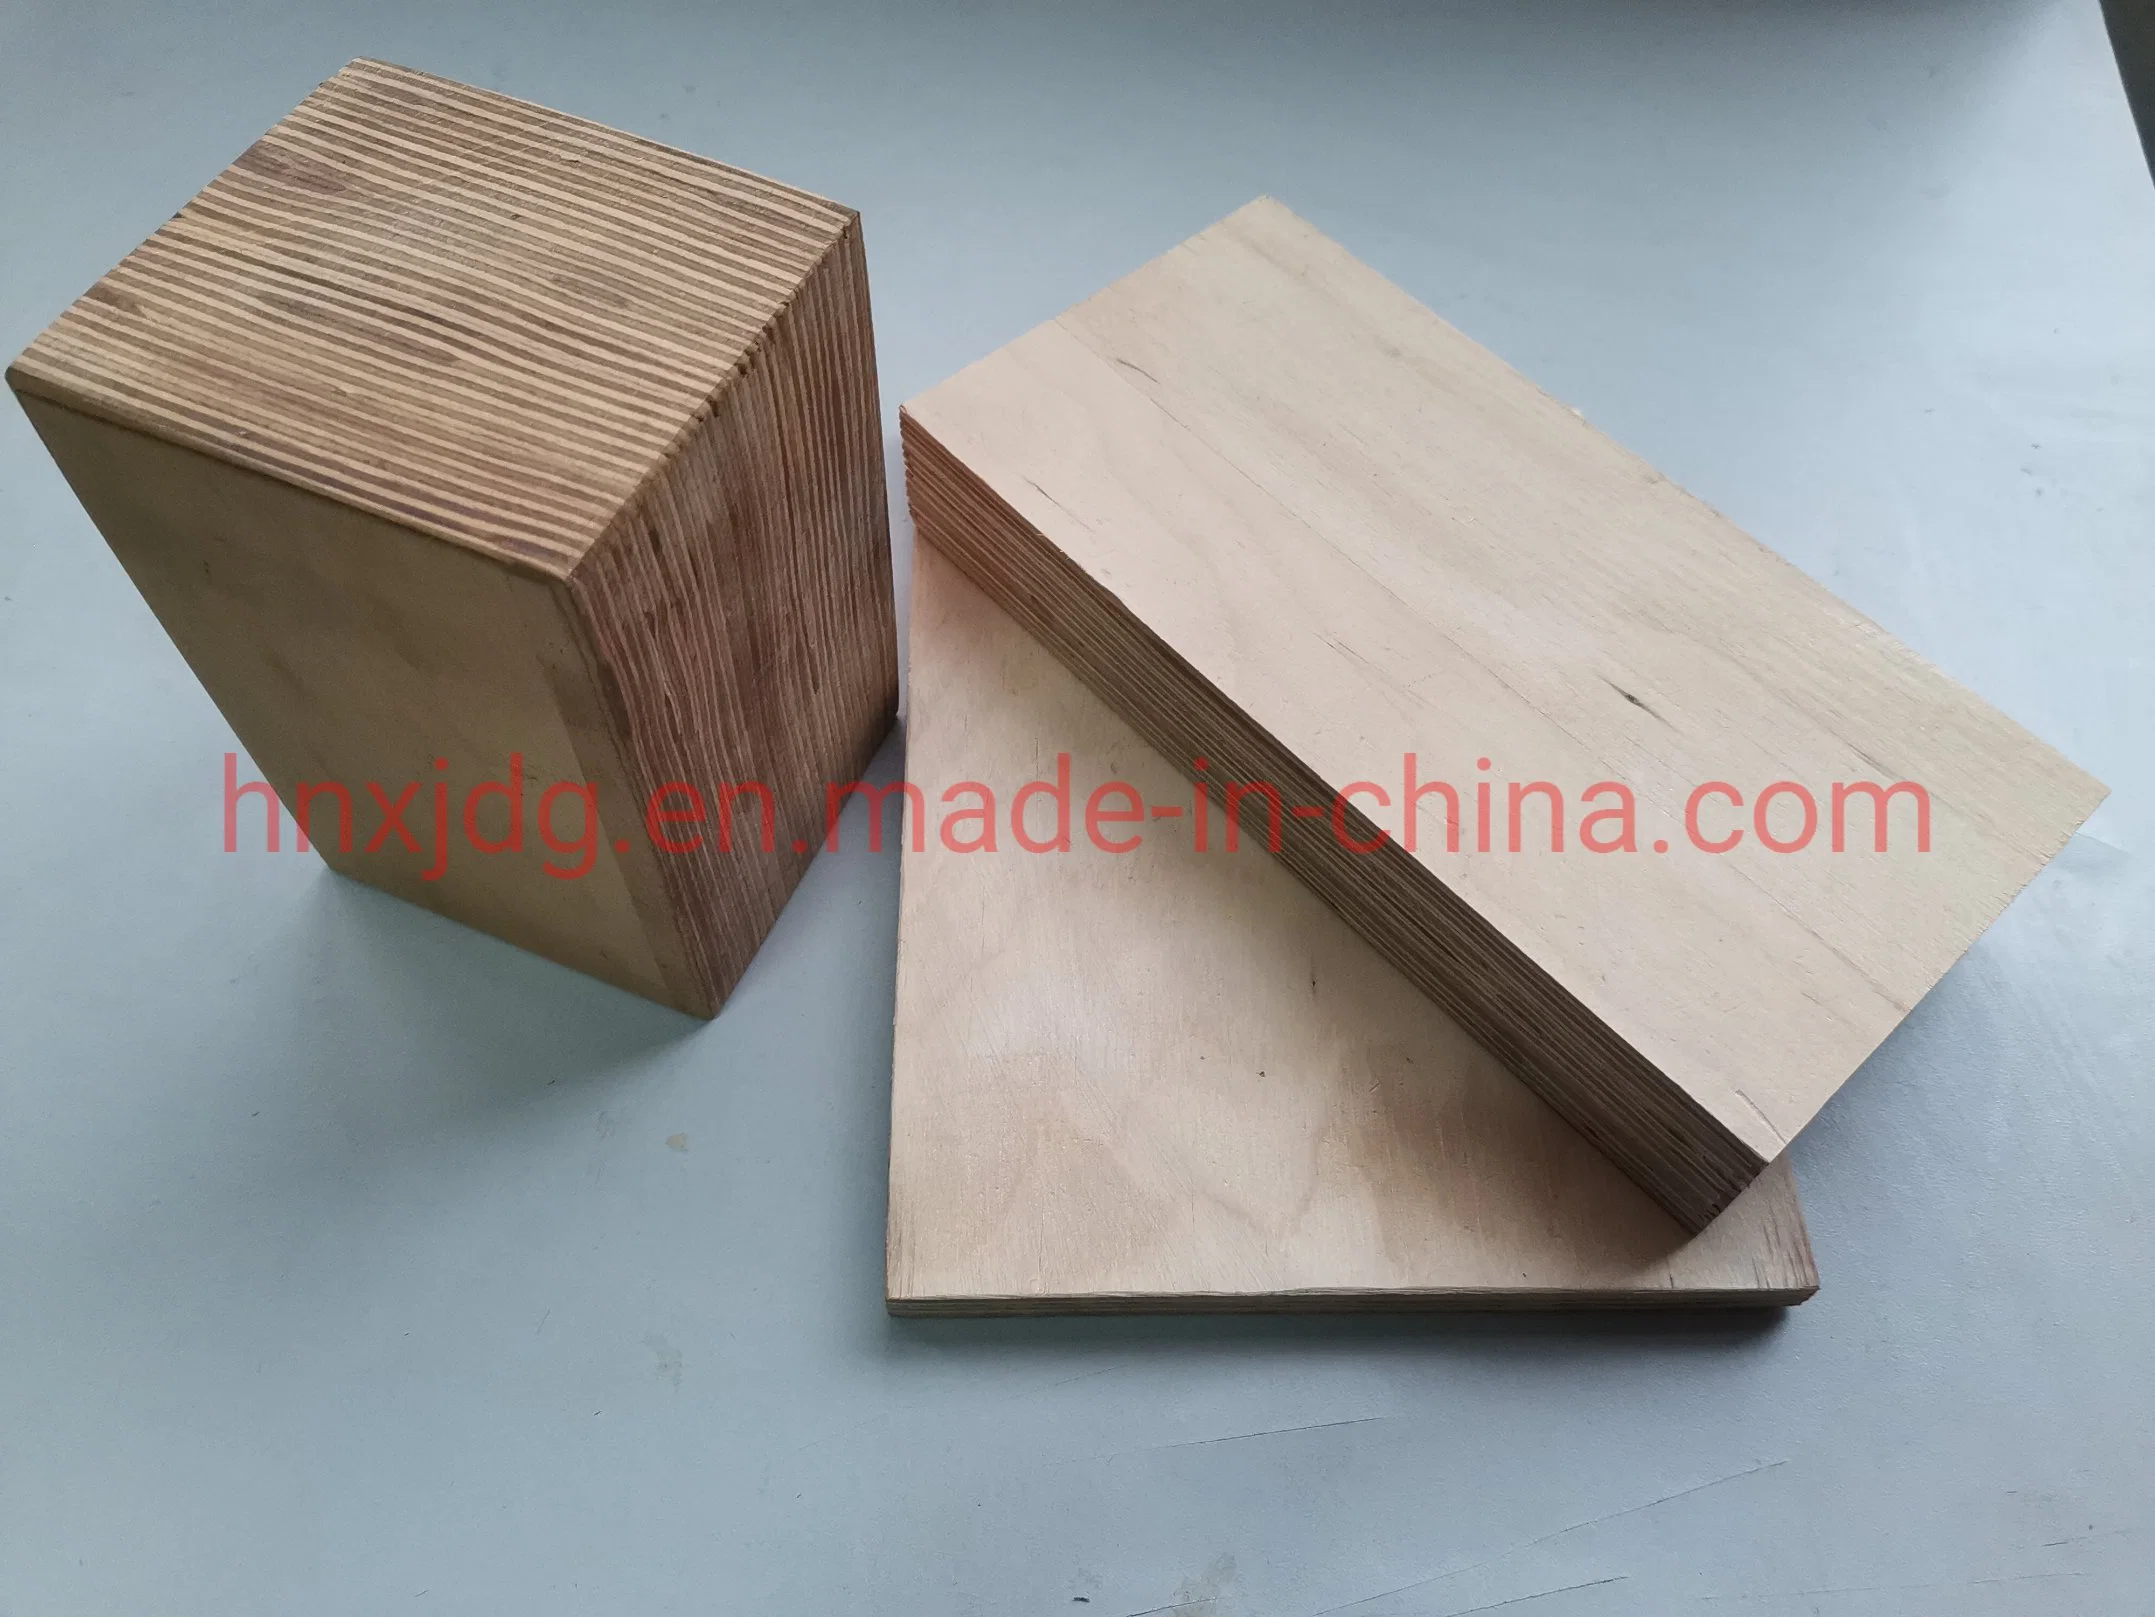 Isolationsmaterialien Hochspannung und Wärmebeständigkeit Sperrholz oder Holz Laminierte Platten/Platten für Transformator